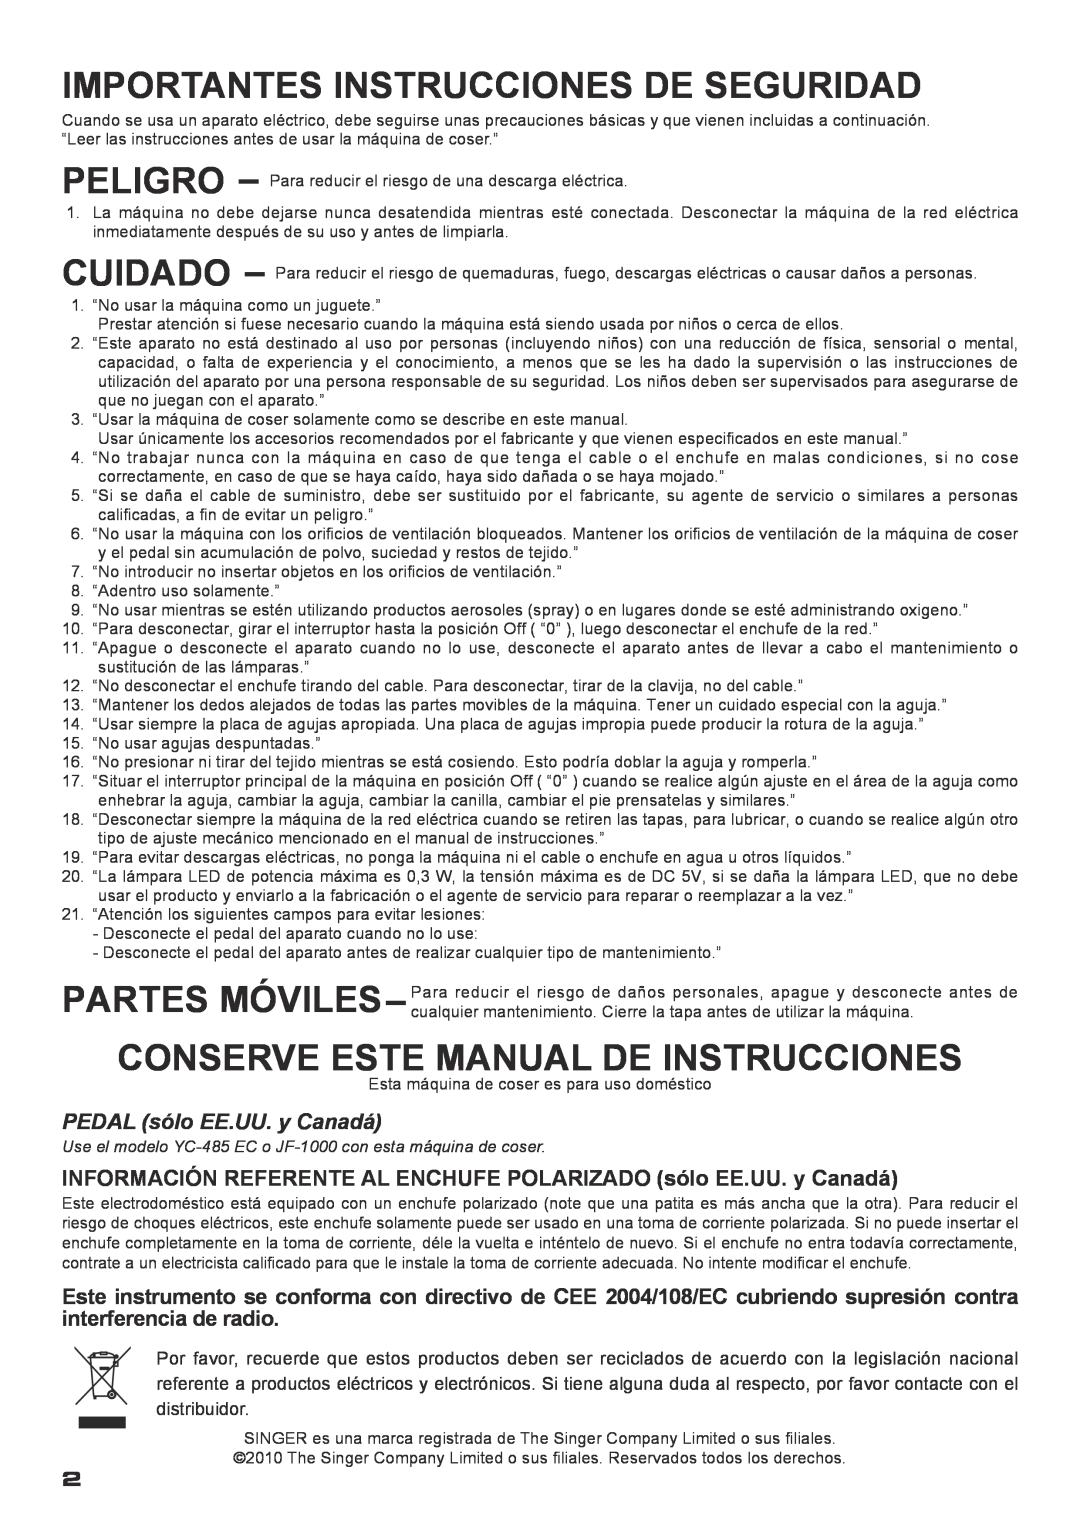 Singer XL-400 Importantes Instrucciones De Seguridad, Conserve Este Manual De Instrucciones, PEDAL sólo EE.UU. y Canadá 